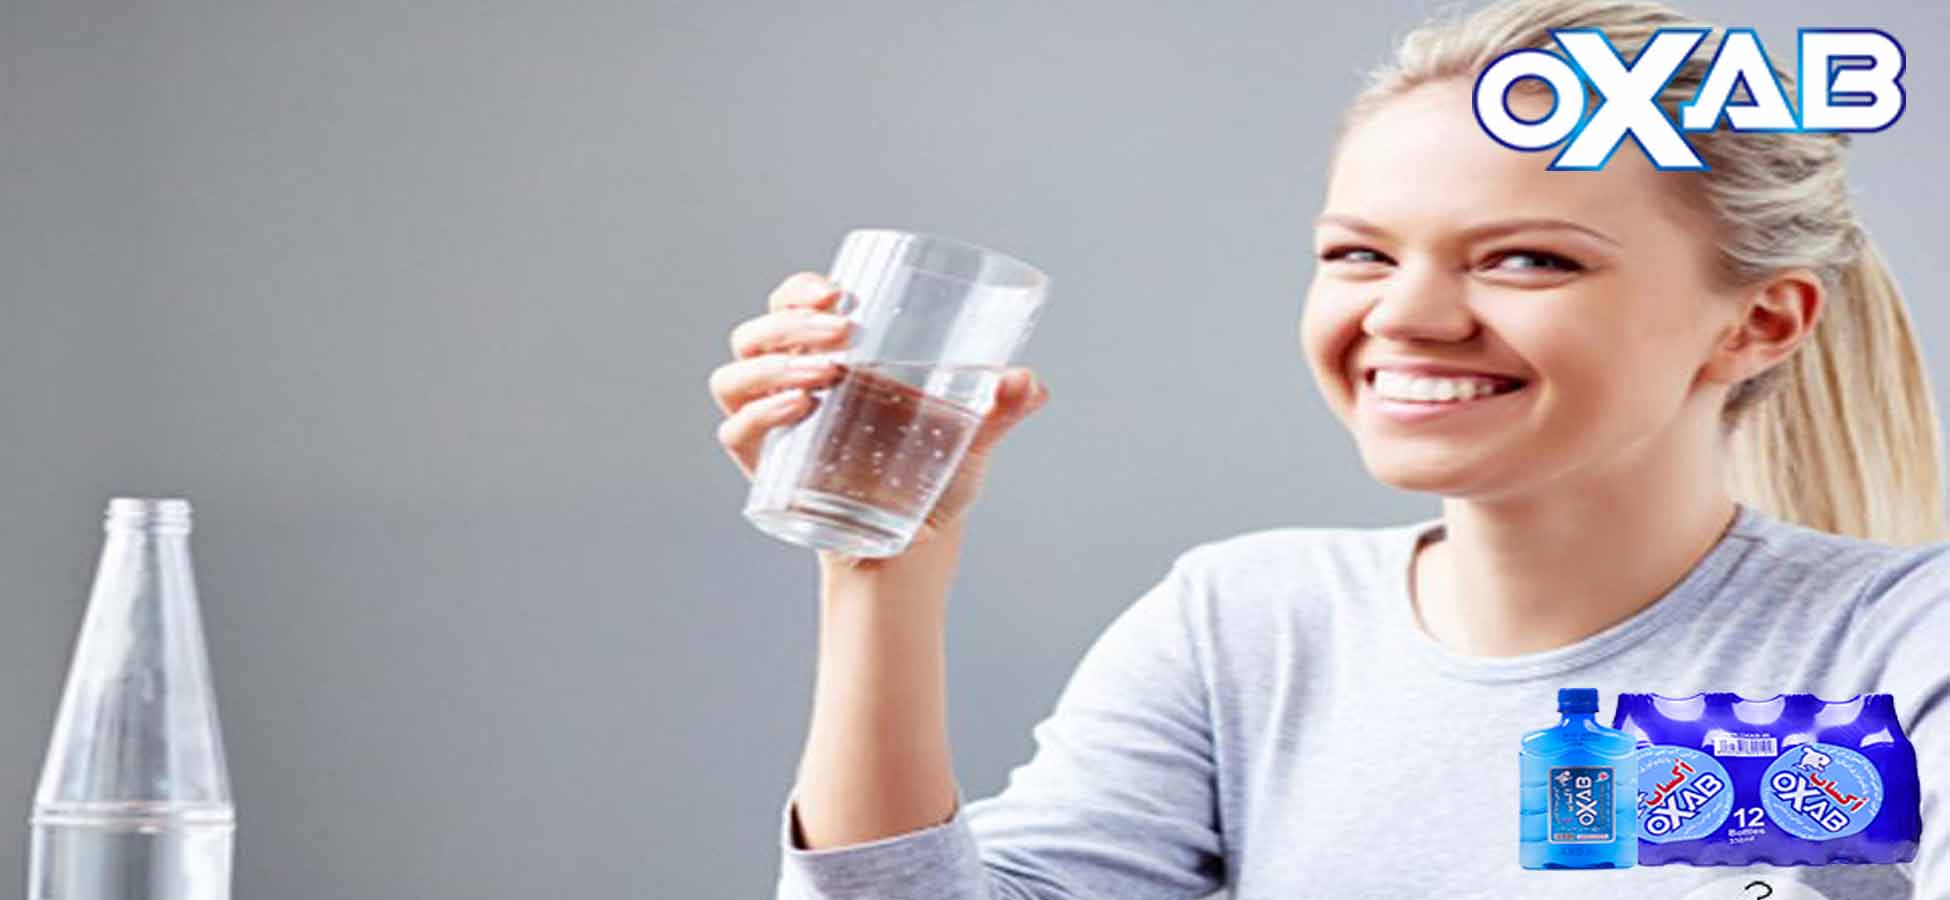 بهترین آب آشامیدنی برای نوشیدن کدام است؟